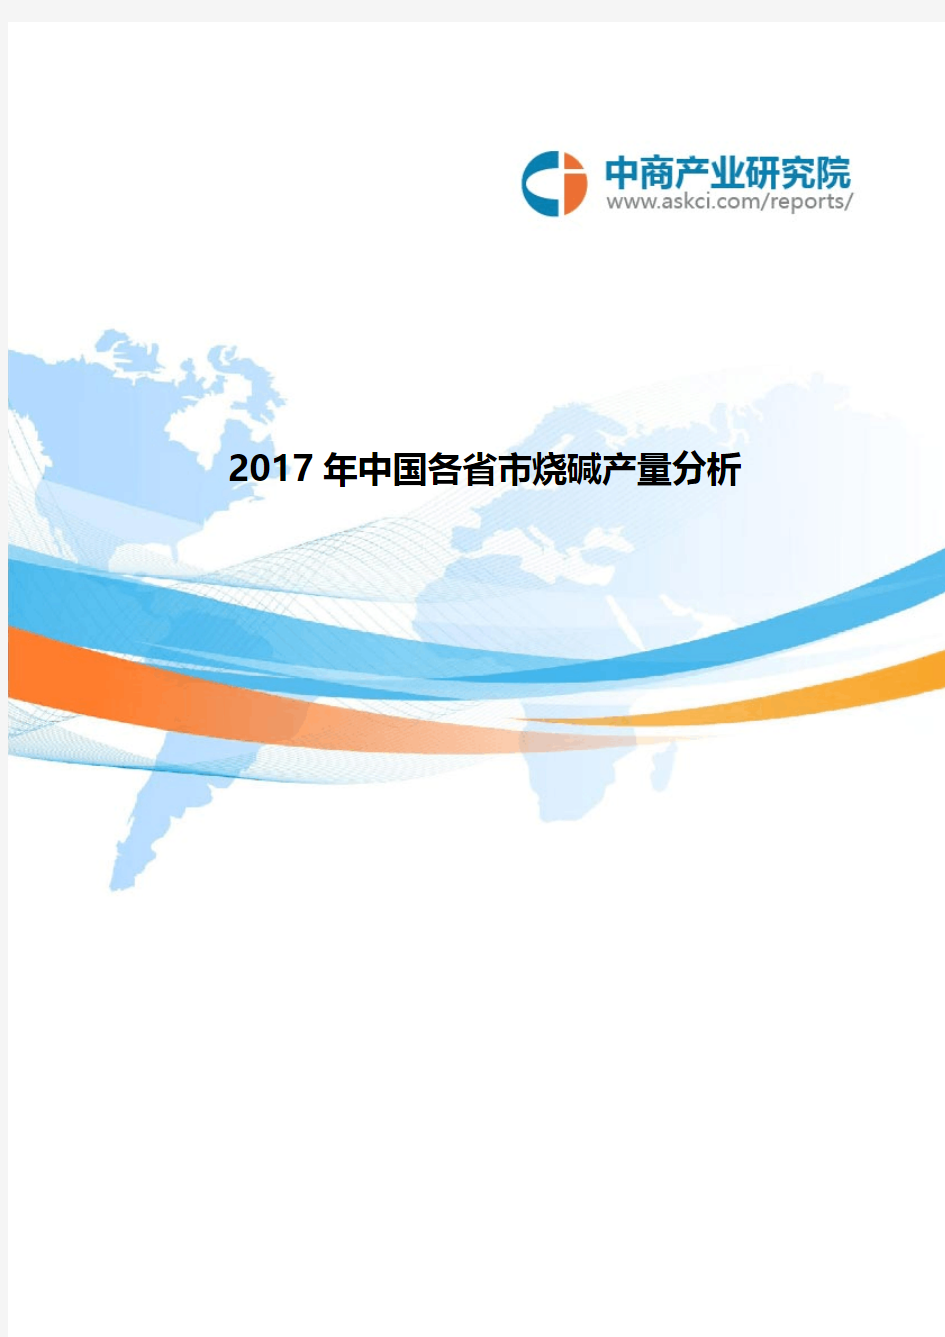 2017年中国各省市烧碱产量分析